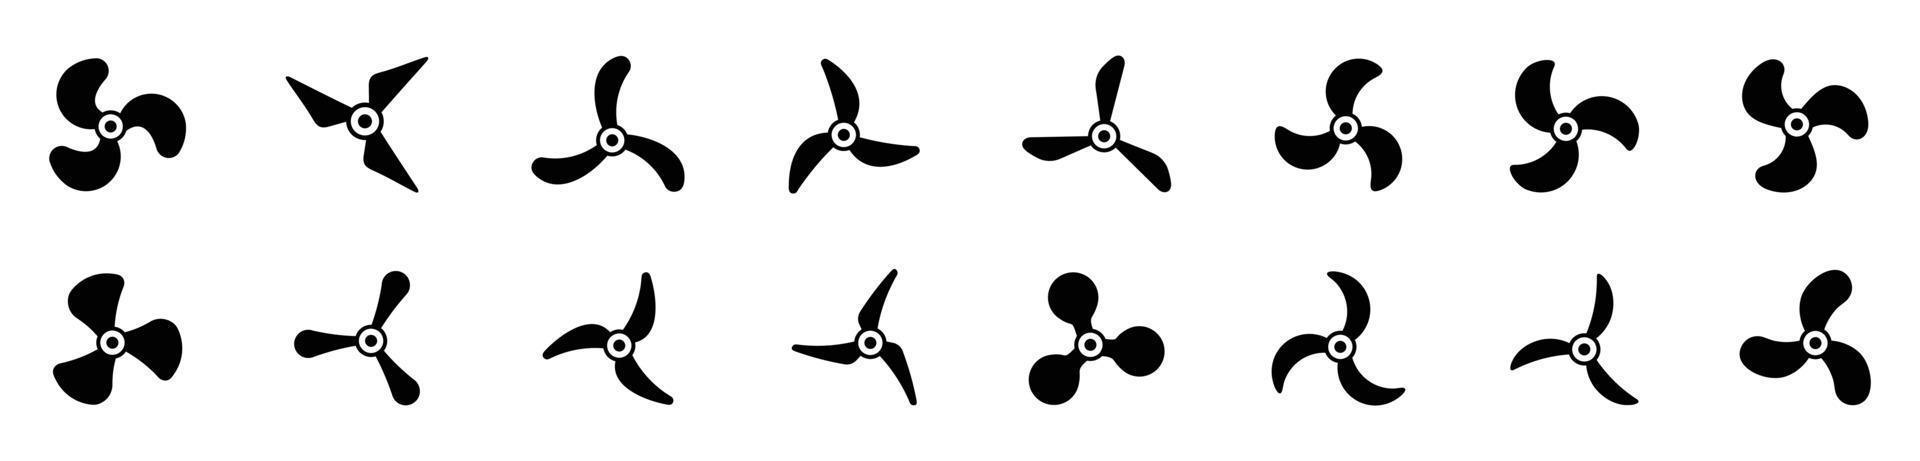 icônes d'hélice d'avion, illustration vectorielle de ventilateur de symboles.jeu d'icônes d'hélice vecteur